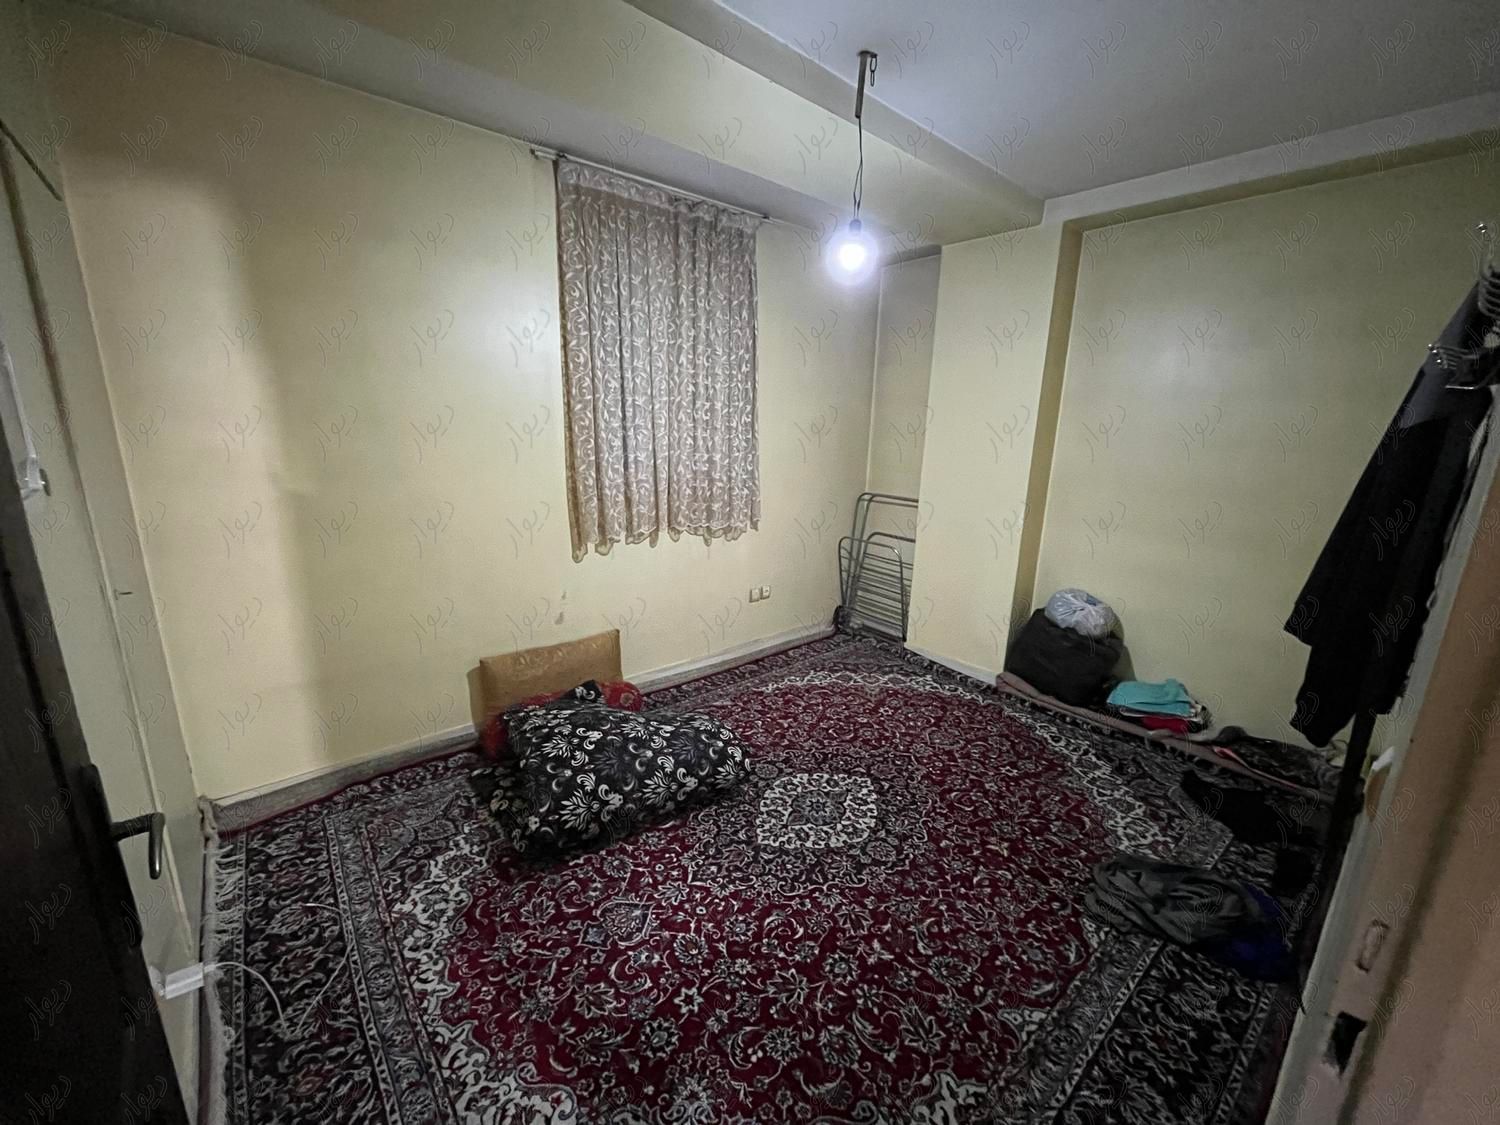 ۴۵متر یکخوابه خوش نقشه تمیز ۱۰ ساله شاپور تختی|فروش آپارتمان|تهران, خانی‌آباد|دیوار